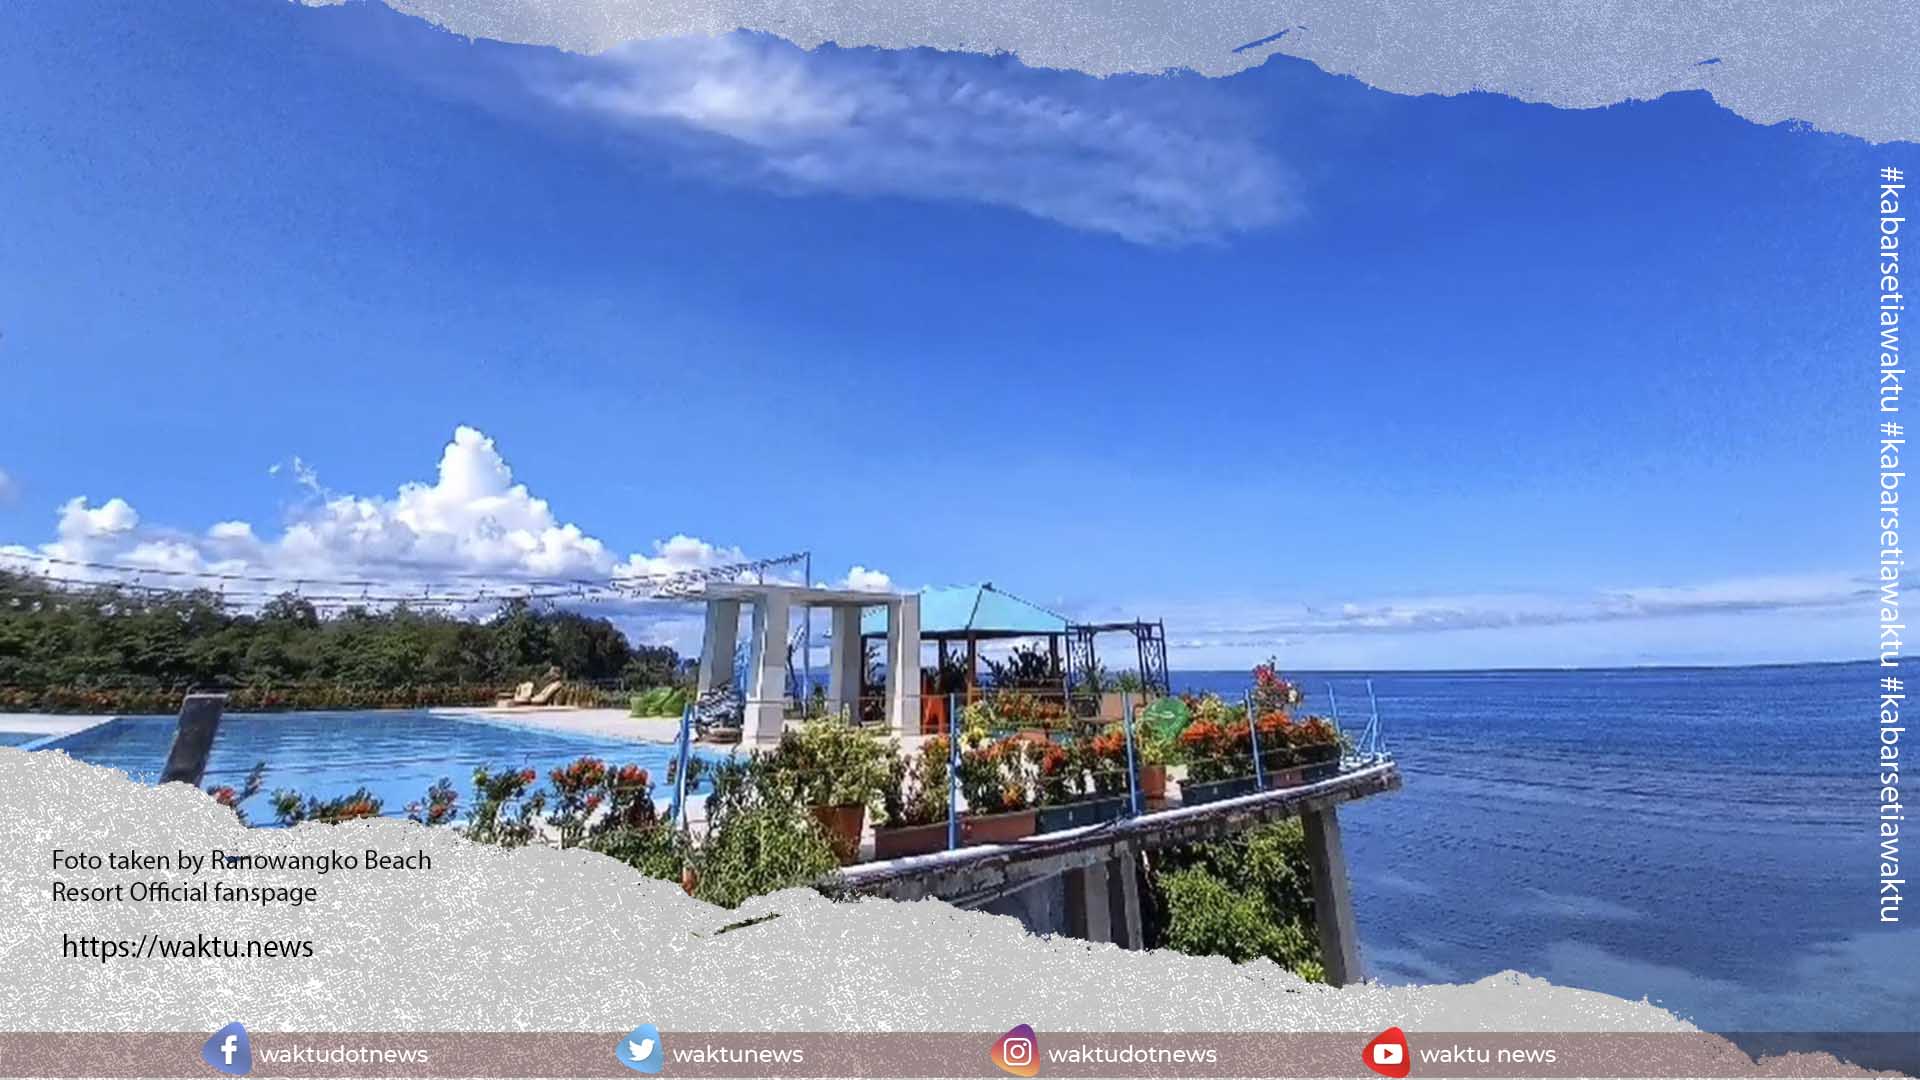 Ranowangko Beach Resort